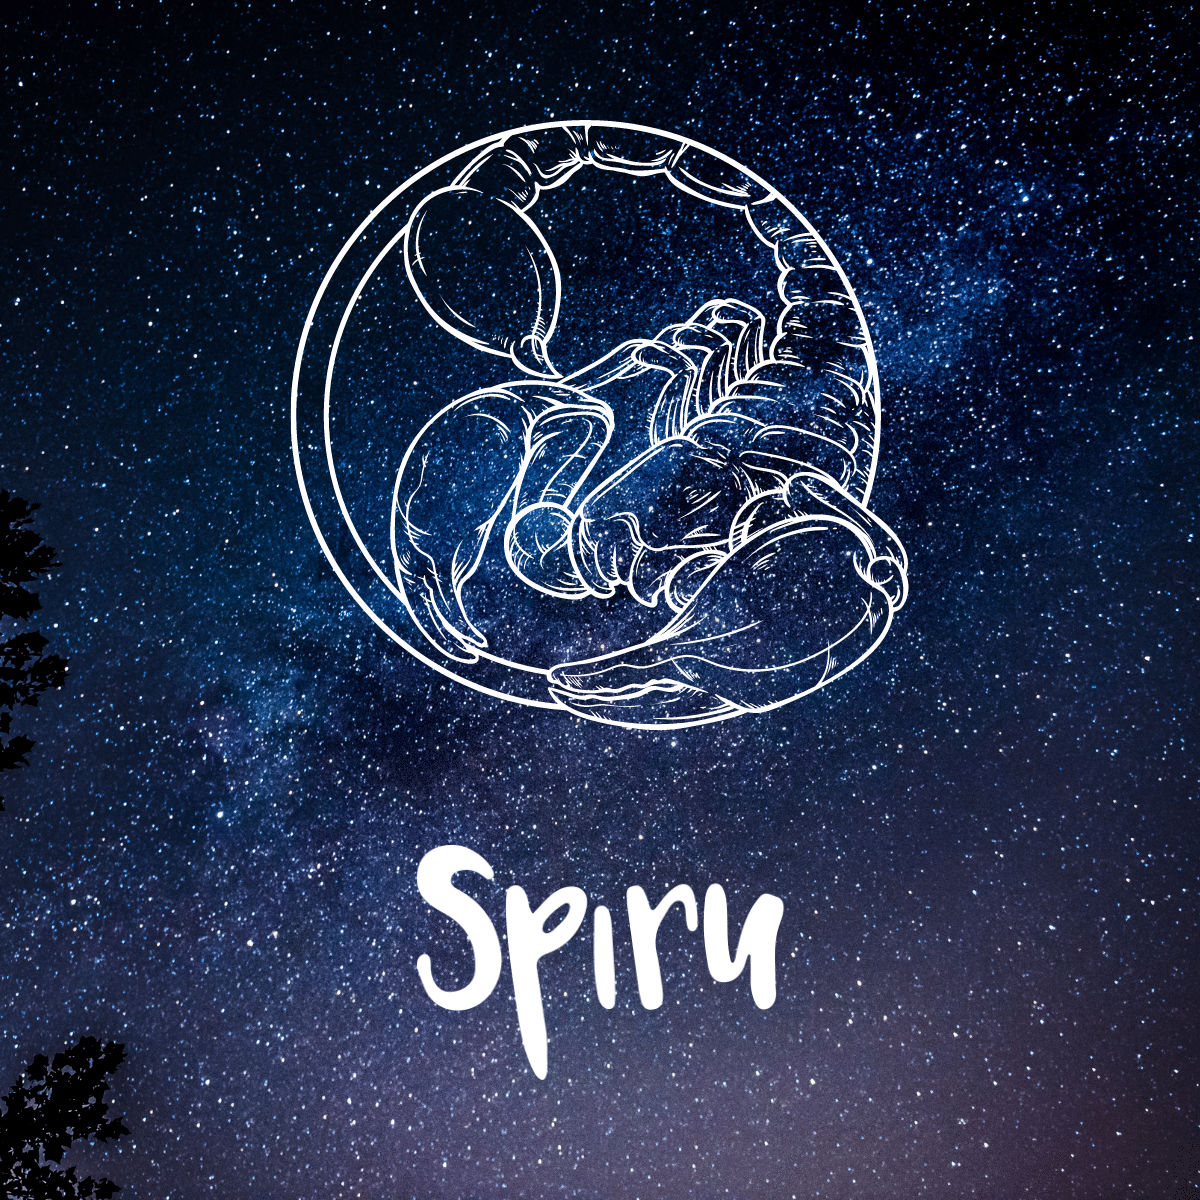 Scorpio symbol stars spiru